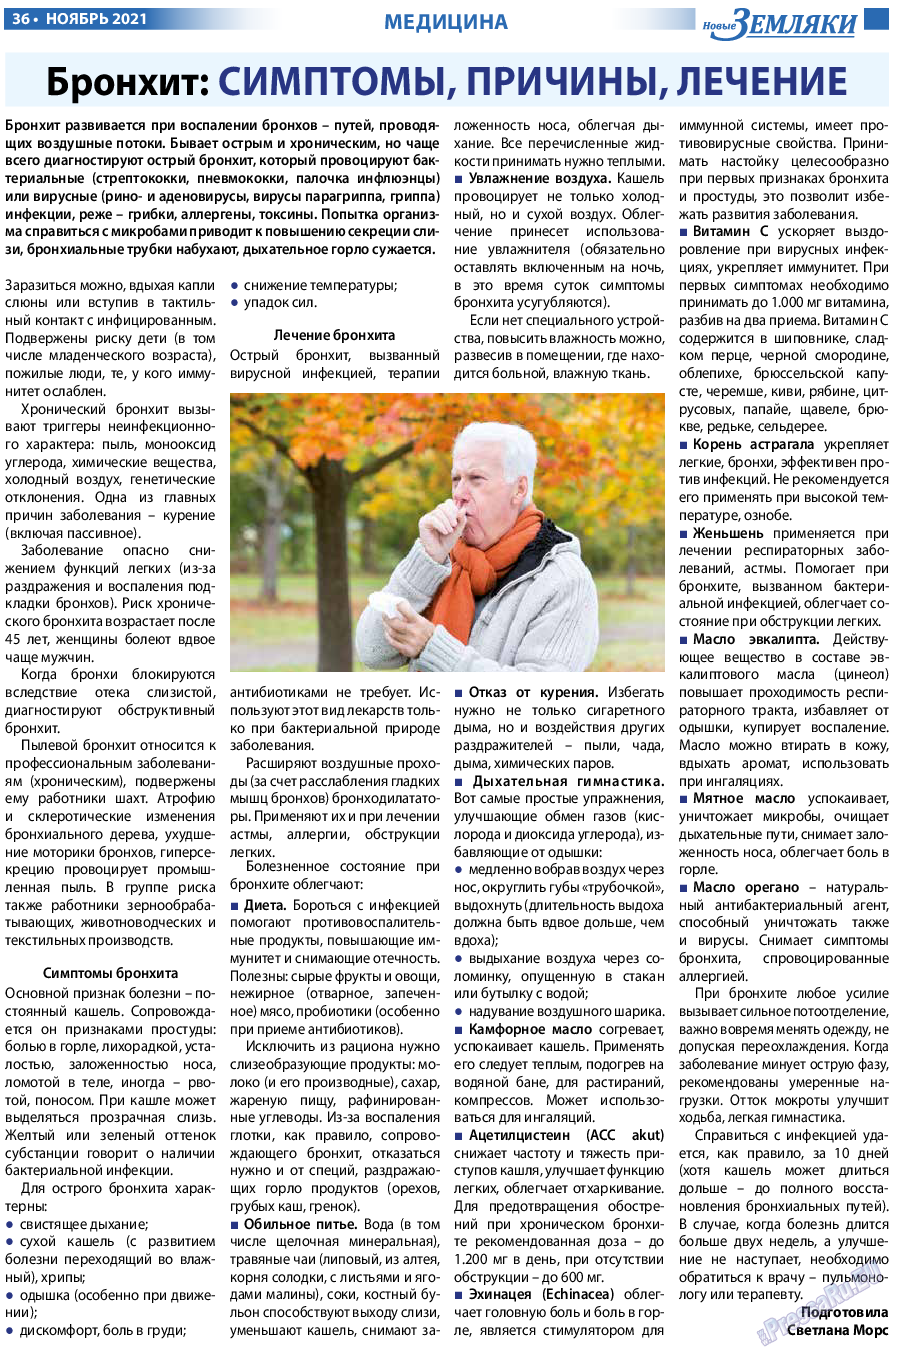 Новые Земляки, газета. 2021 №11 стр.36